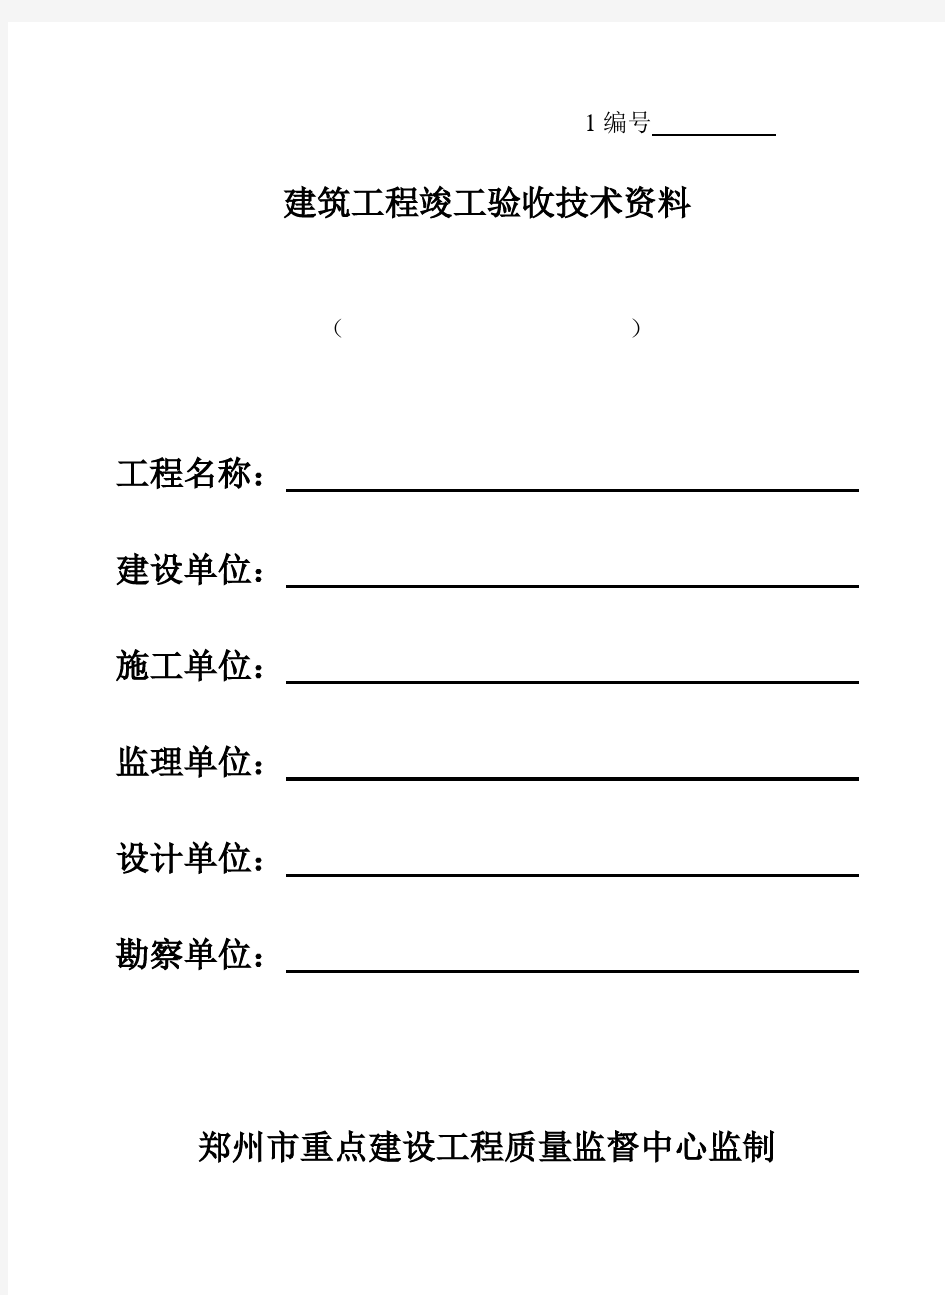 郑州市重点建设工程资料表格(土建及安装)